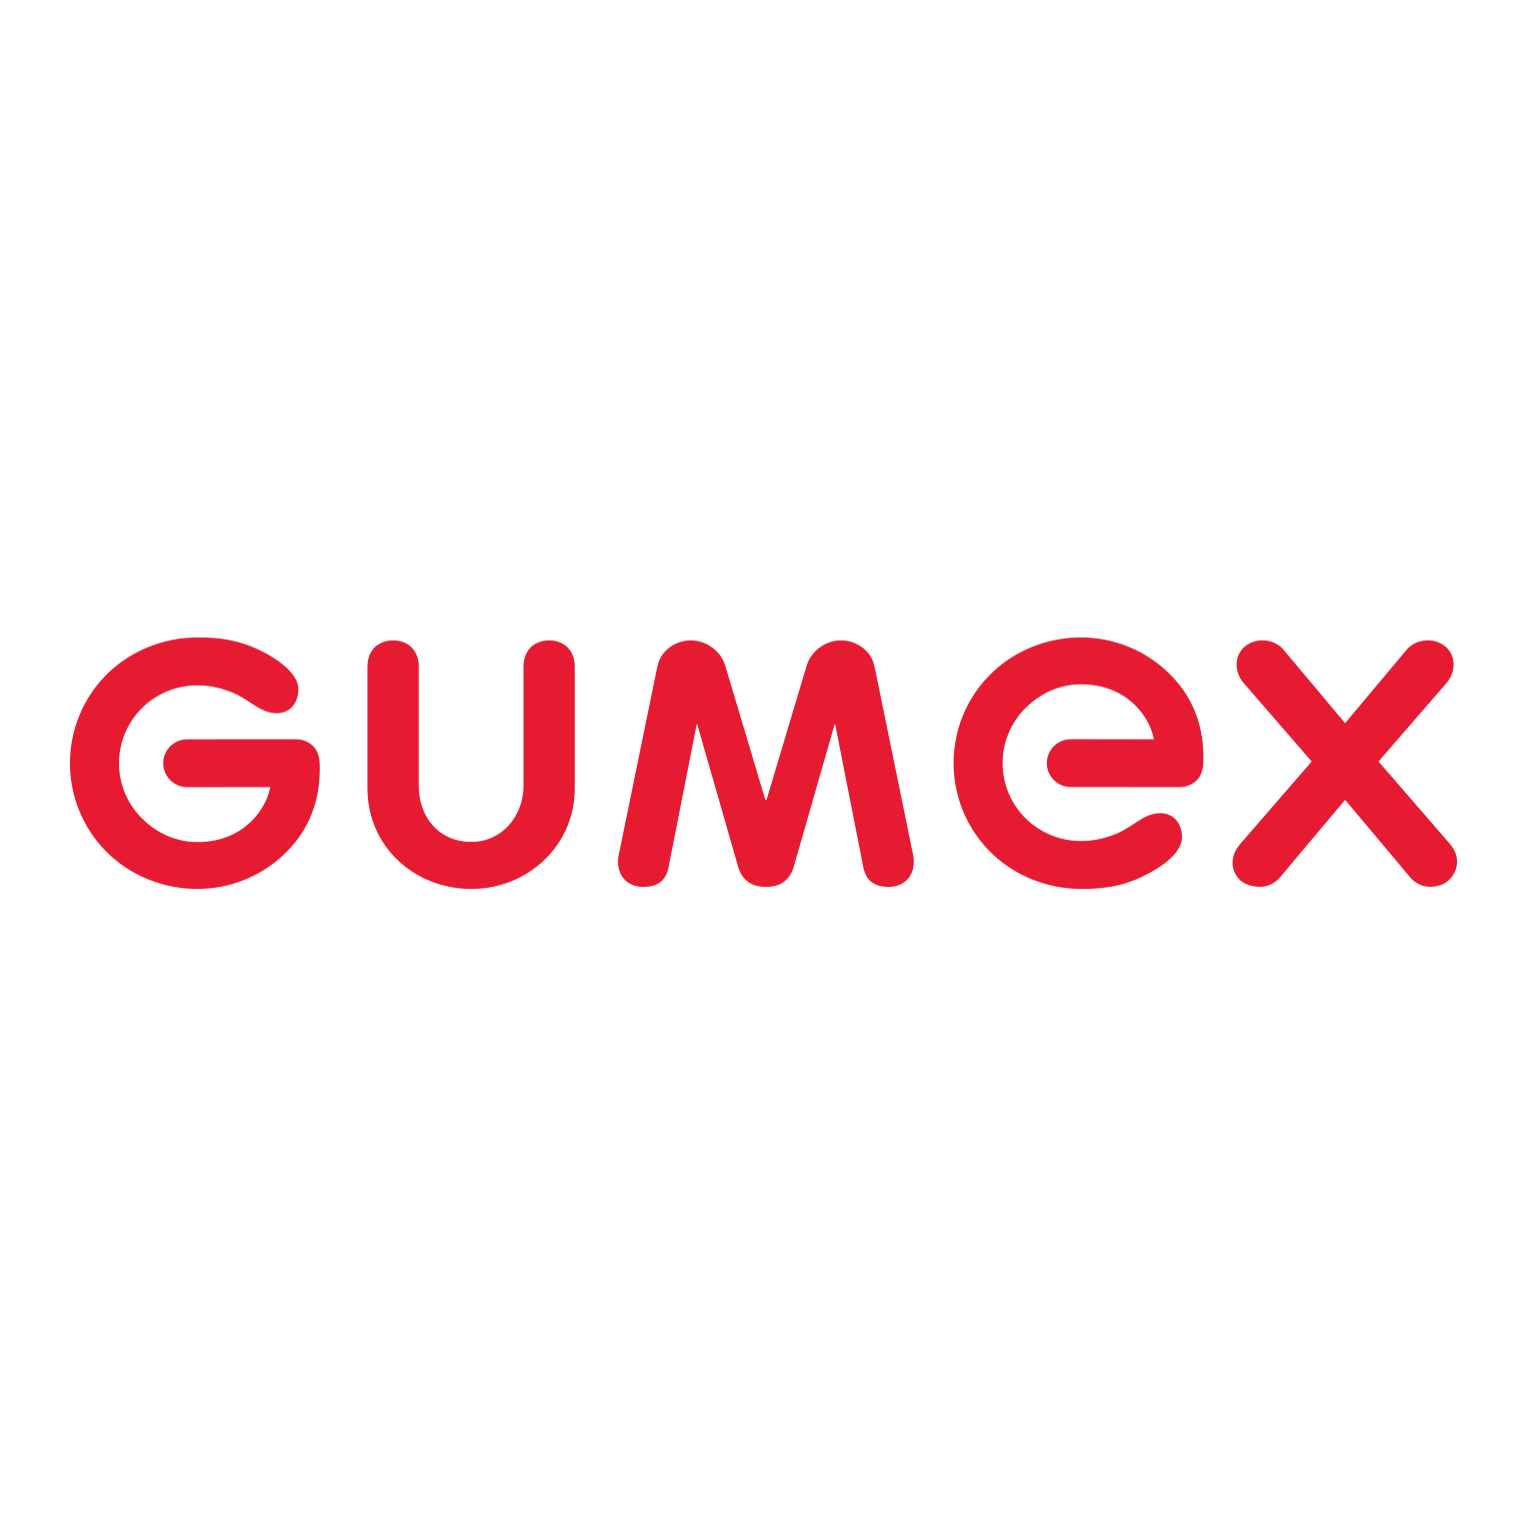 Gumex